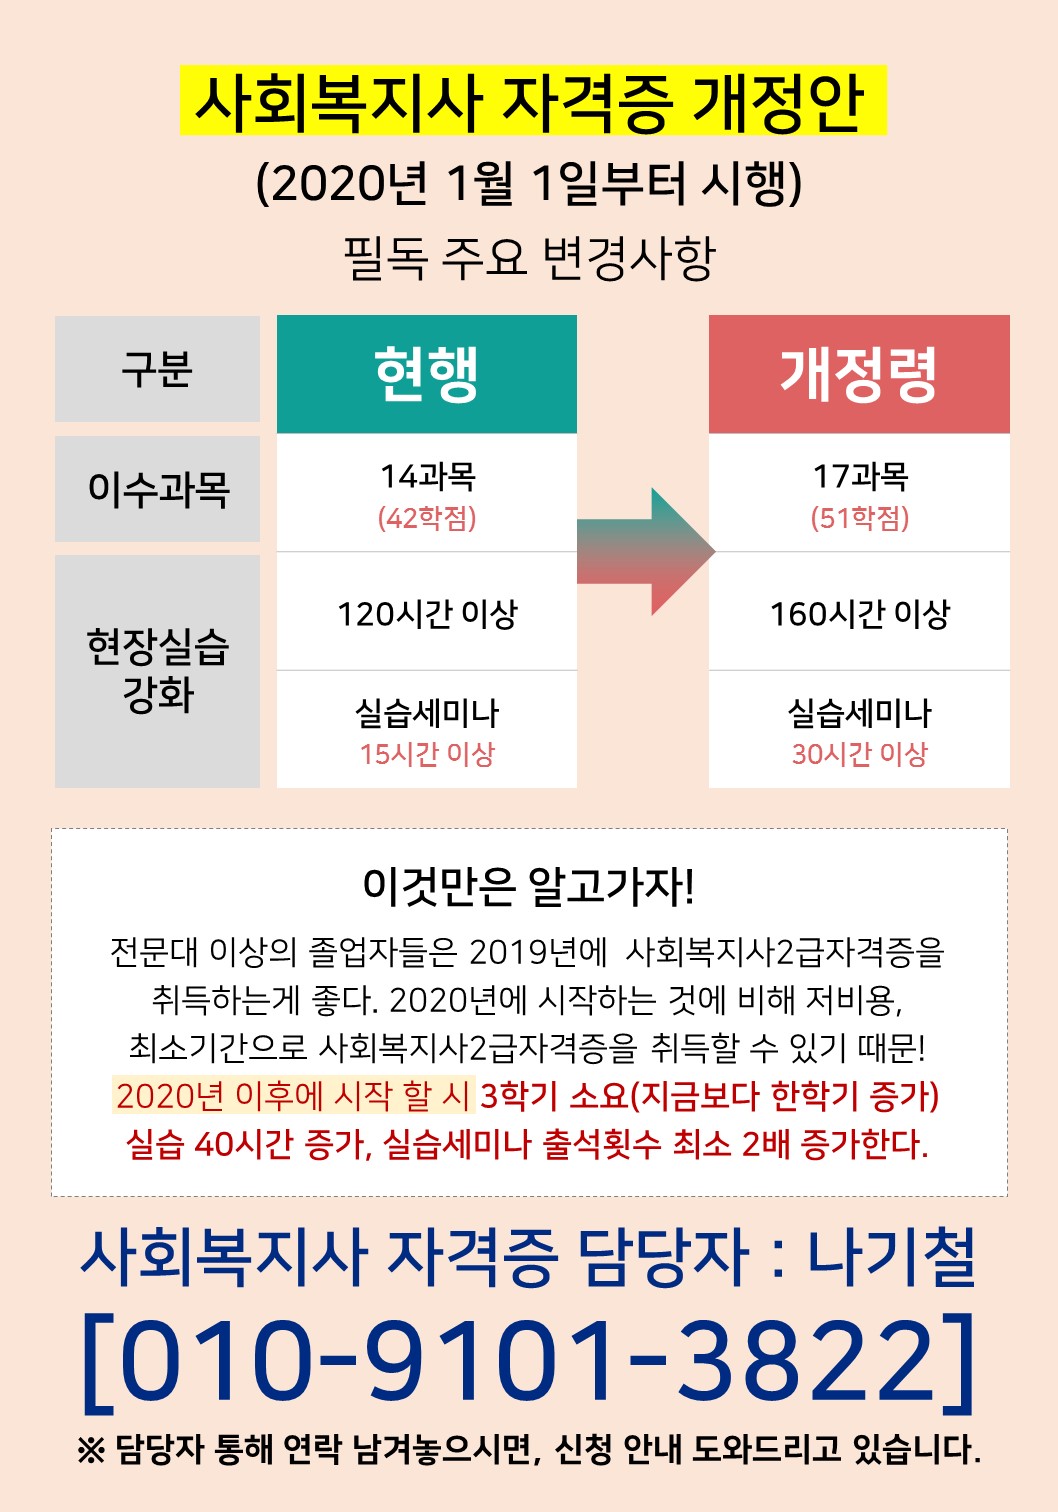 ▶2020년도 사회복지사 2급 취득법 개정 예정◀ 첨부 이미지